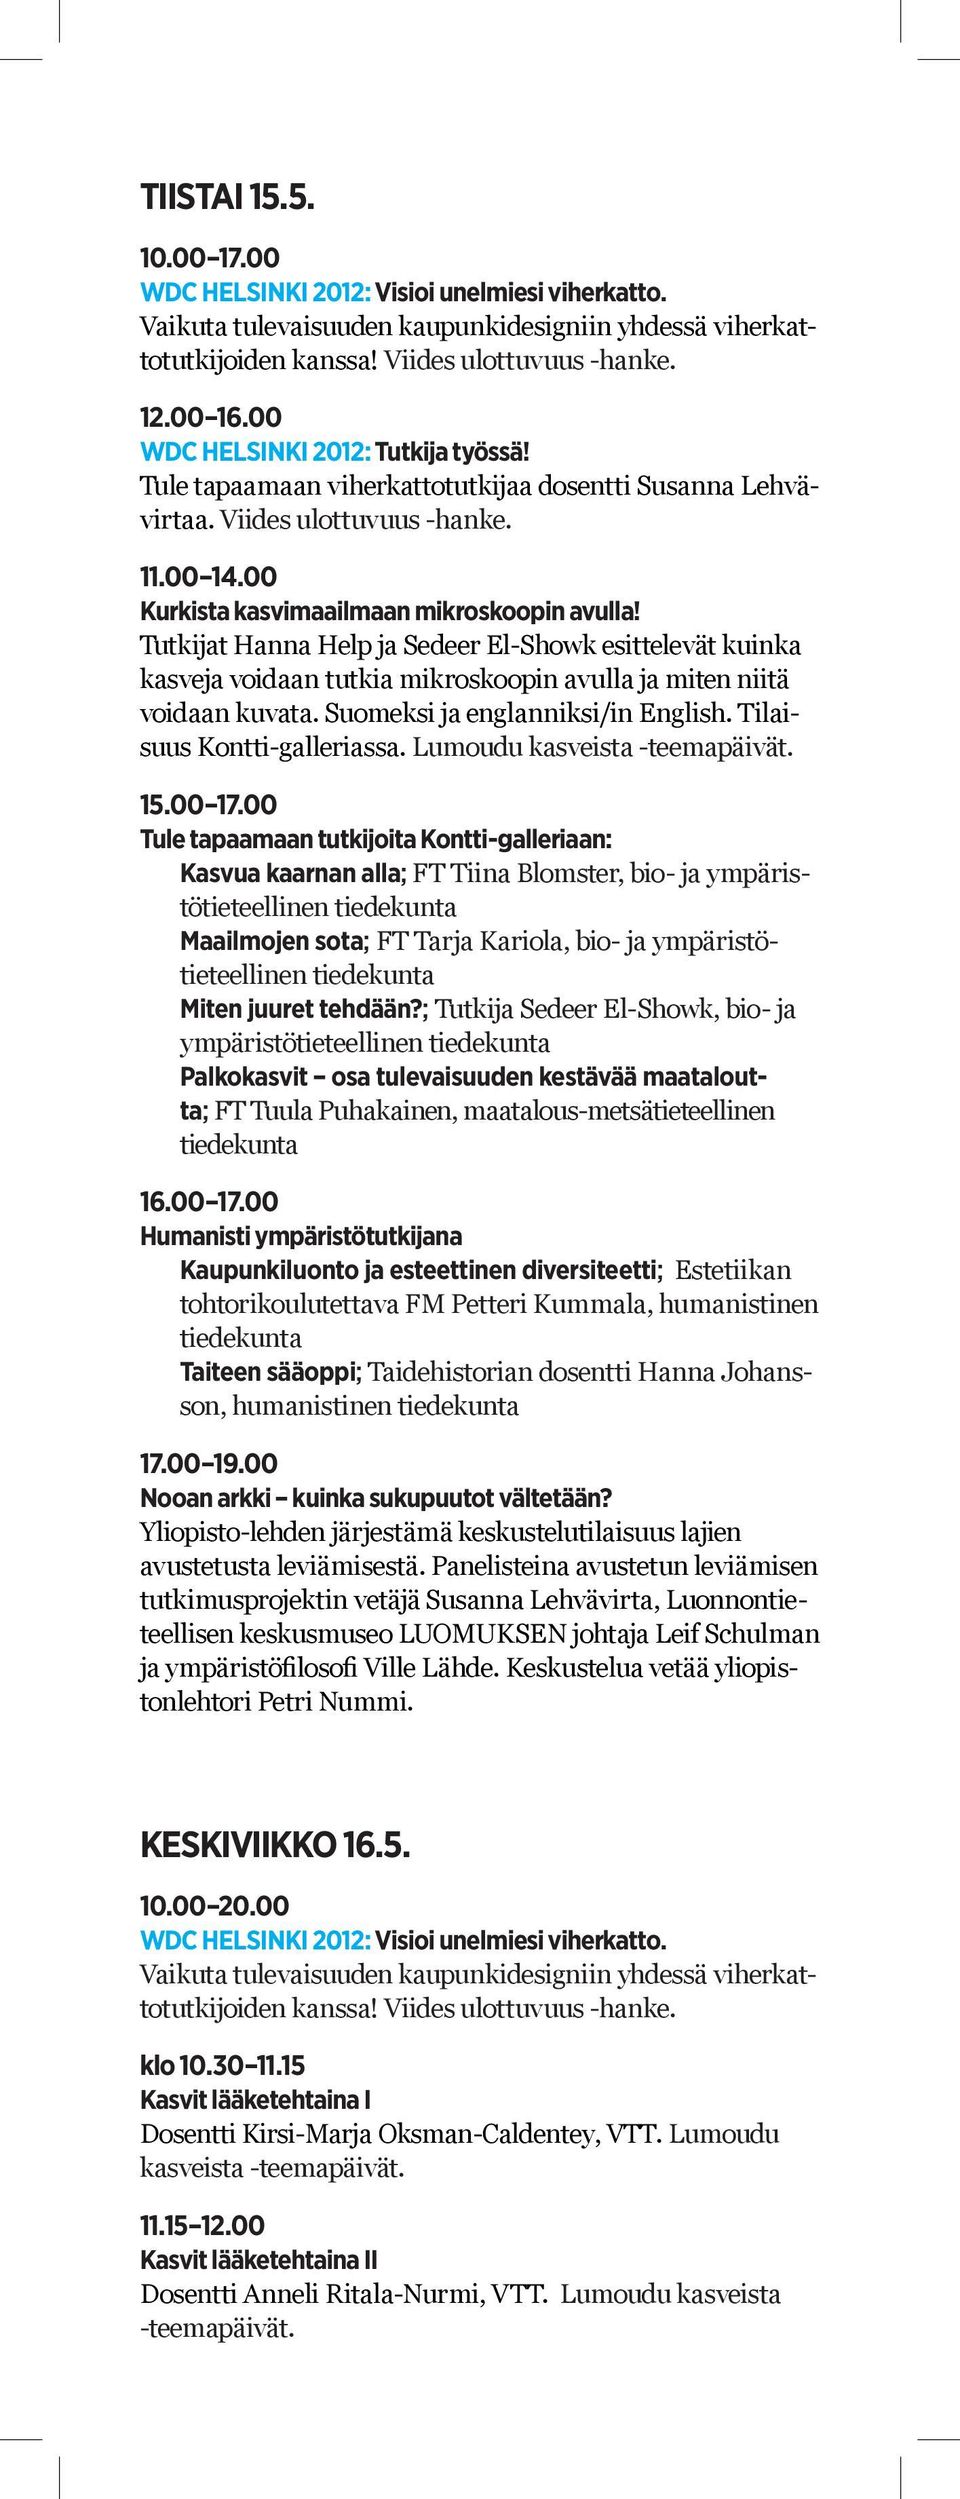 Suomeksi ja englanniksi/in English. Tilaisuus Kontti-galleriassa. Lumoudu kasveista -teemapäivät. 15.00 17.